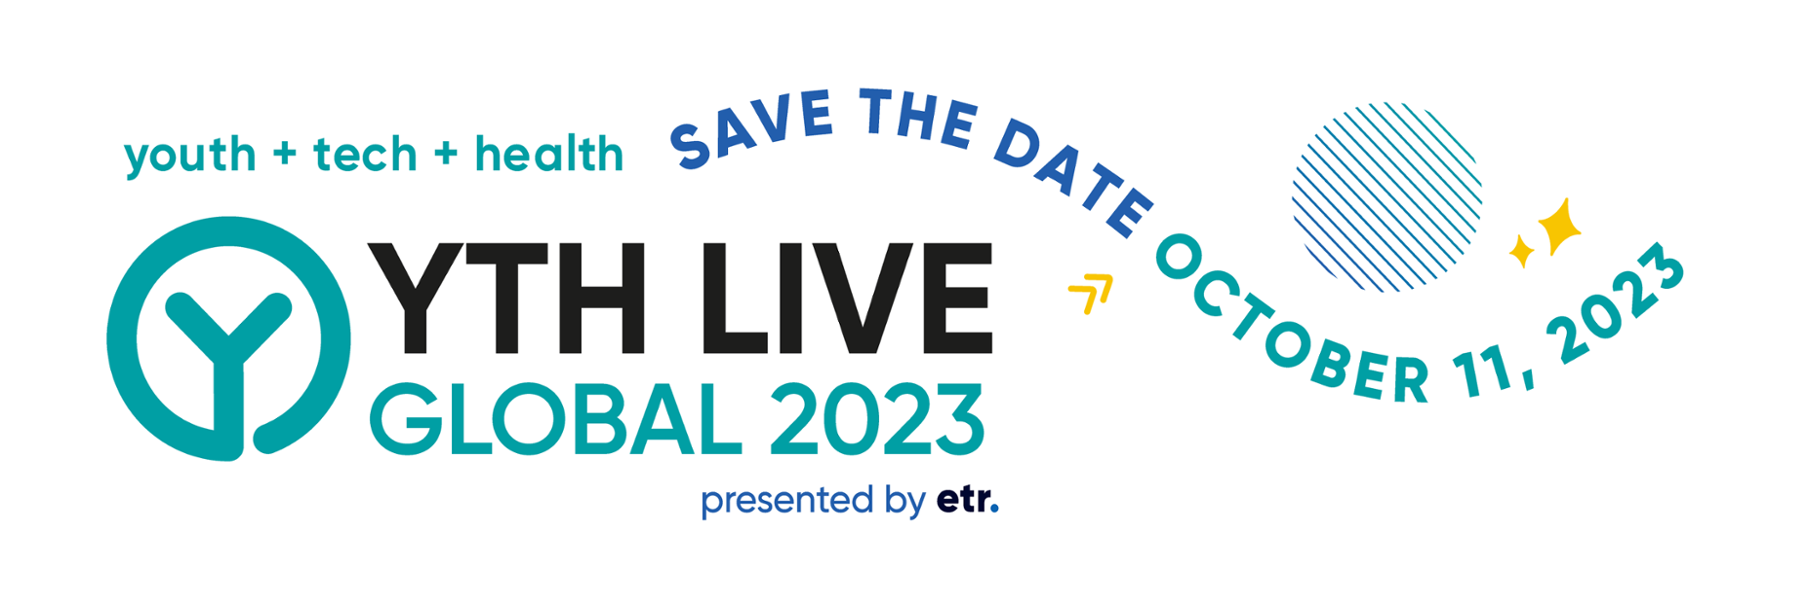 YTH Live Global 2023 banner